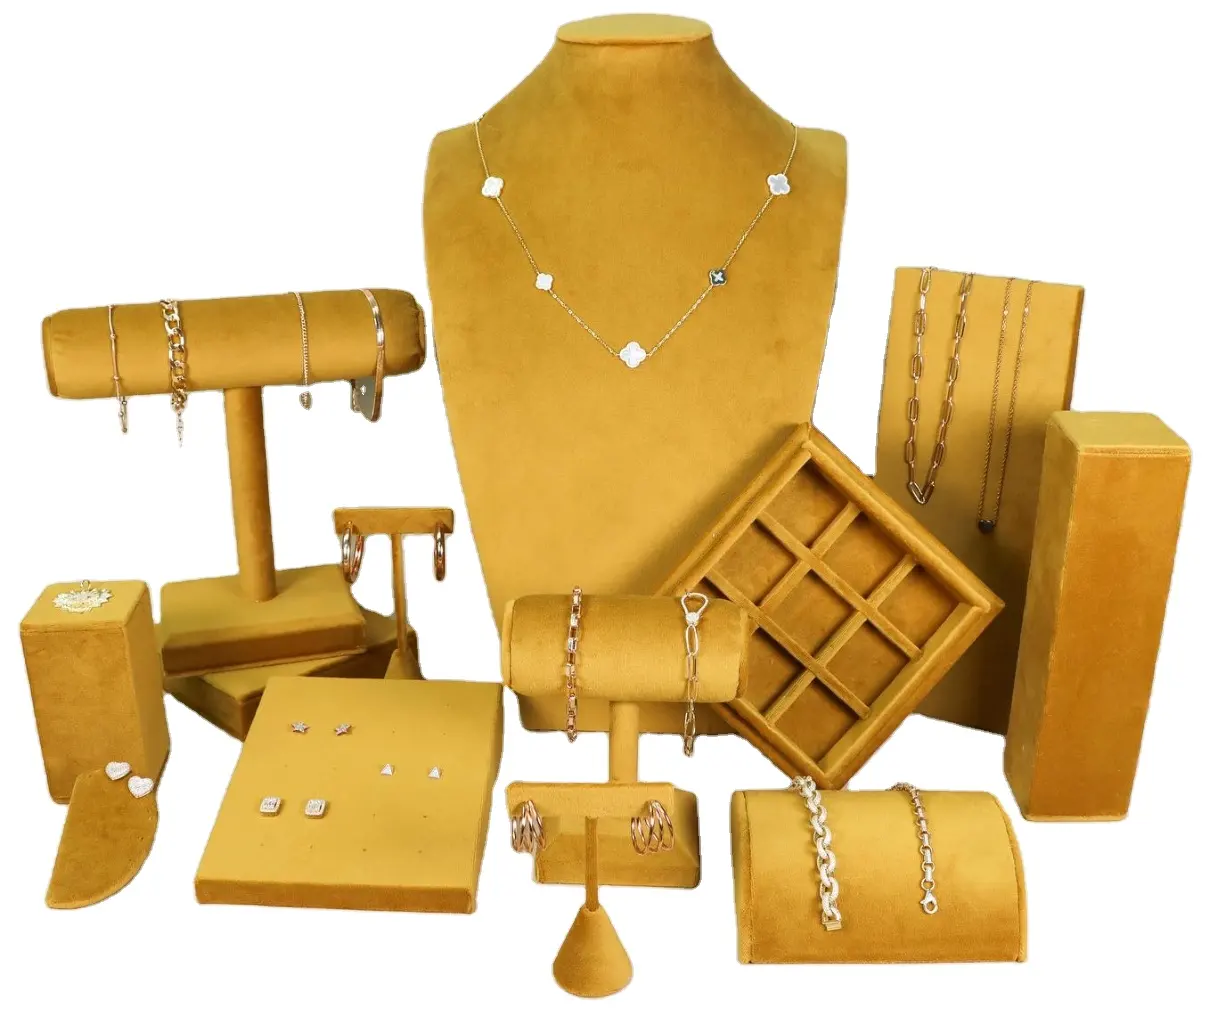 Présentoir à bijoux design personnalisé en usine, présentoir jaune pour bijouteries de luxe haut de gamme, présentoir pour bijoux corporels, velours, daim